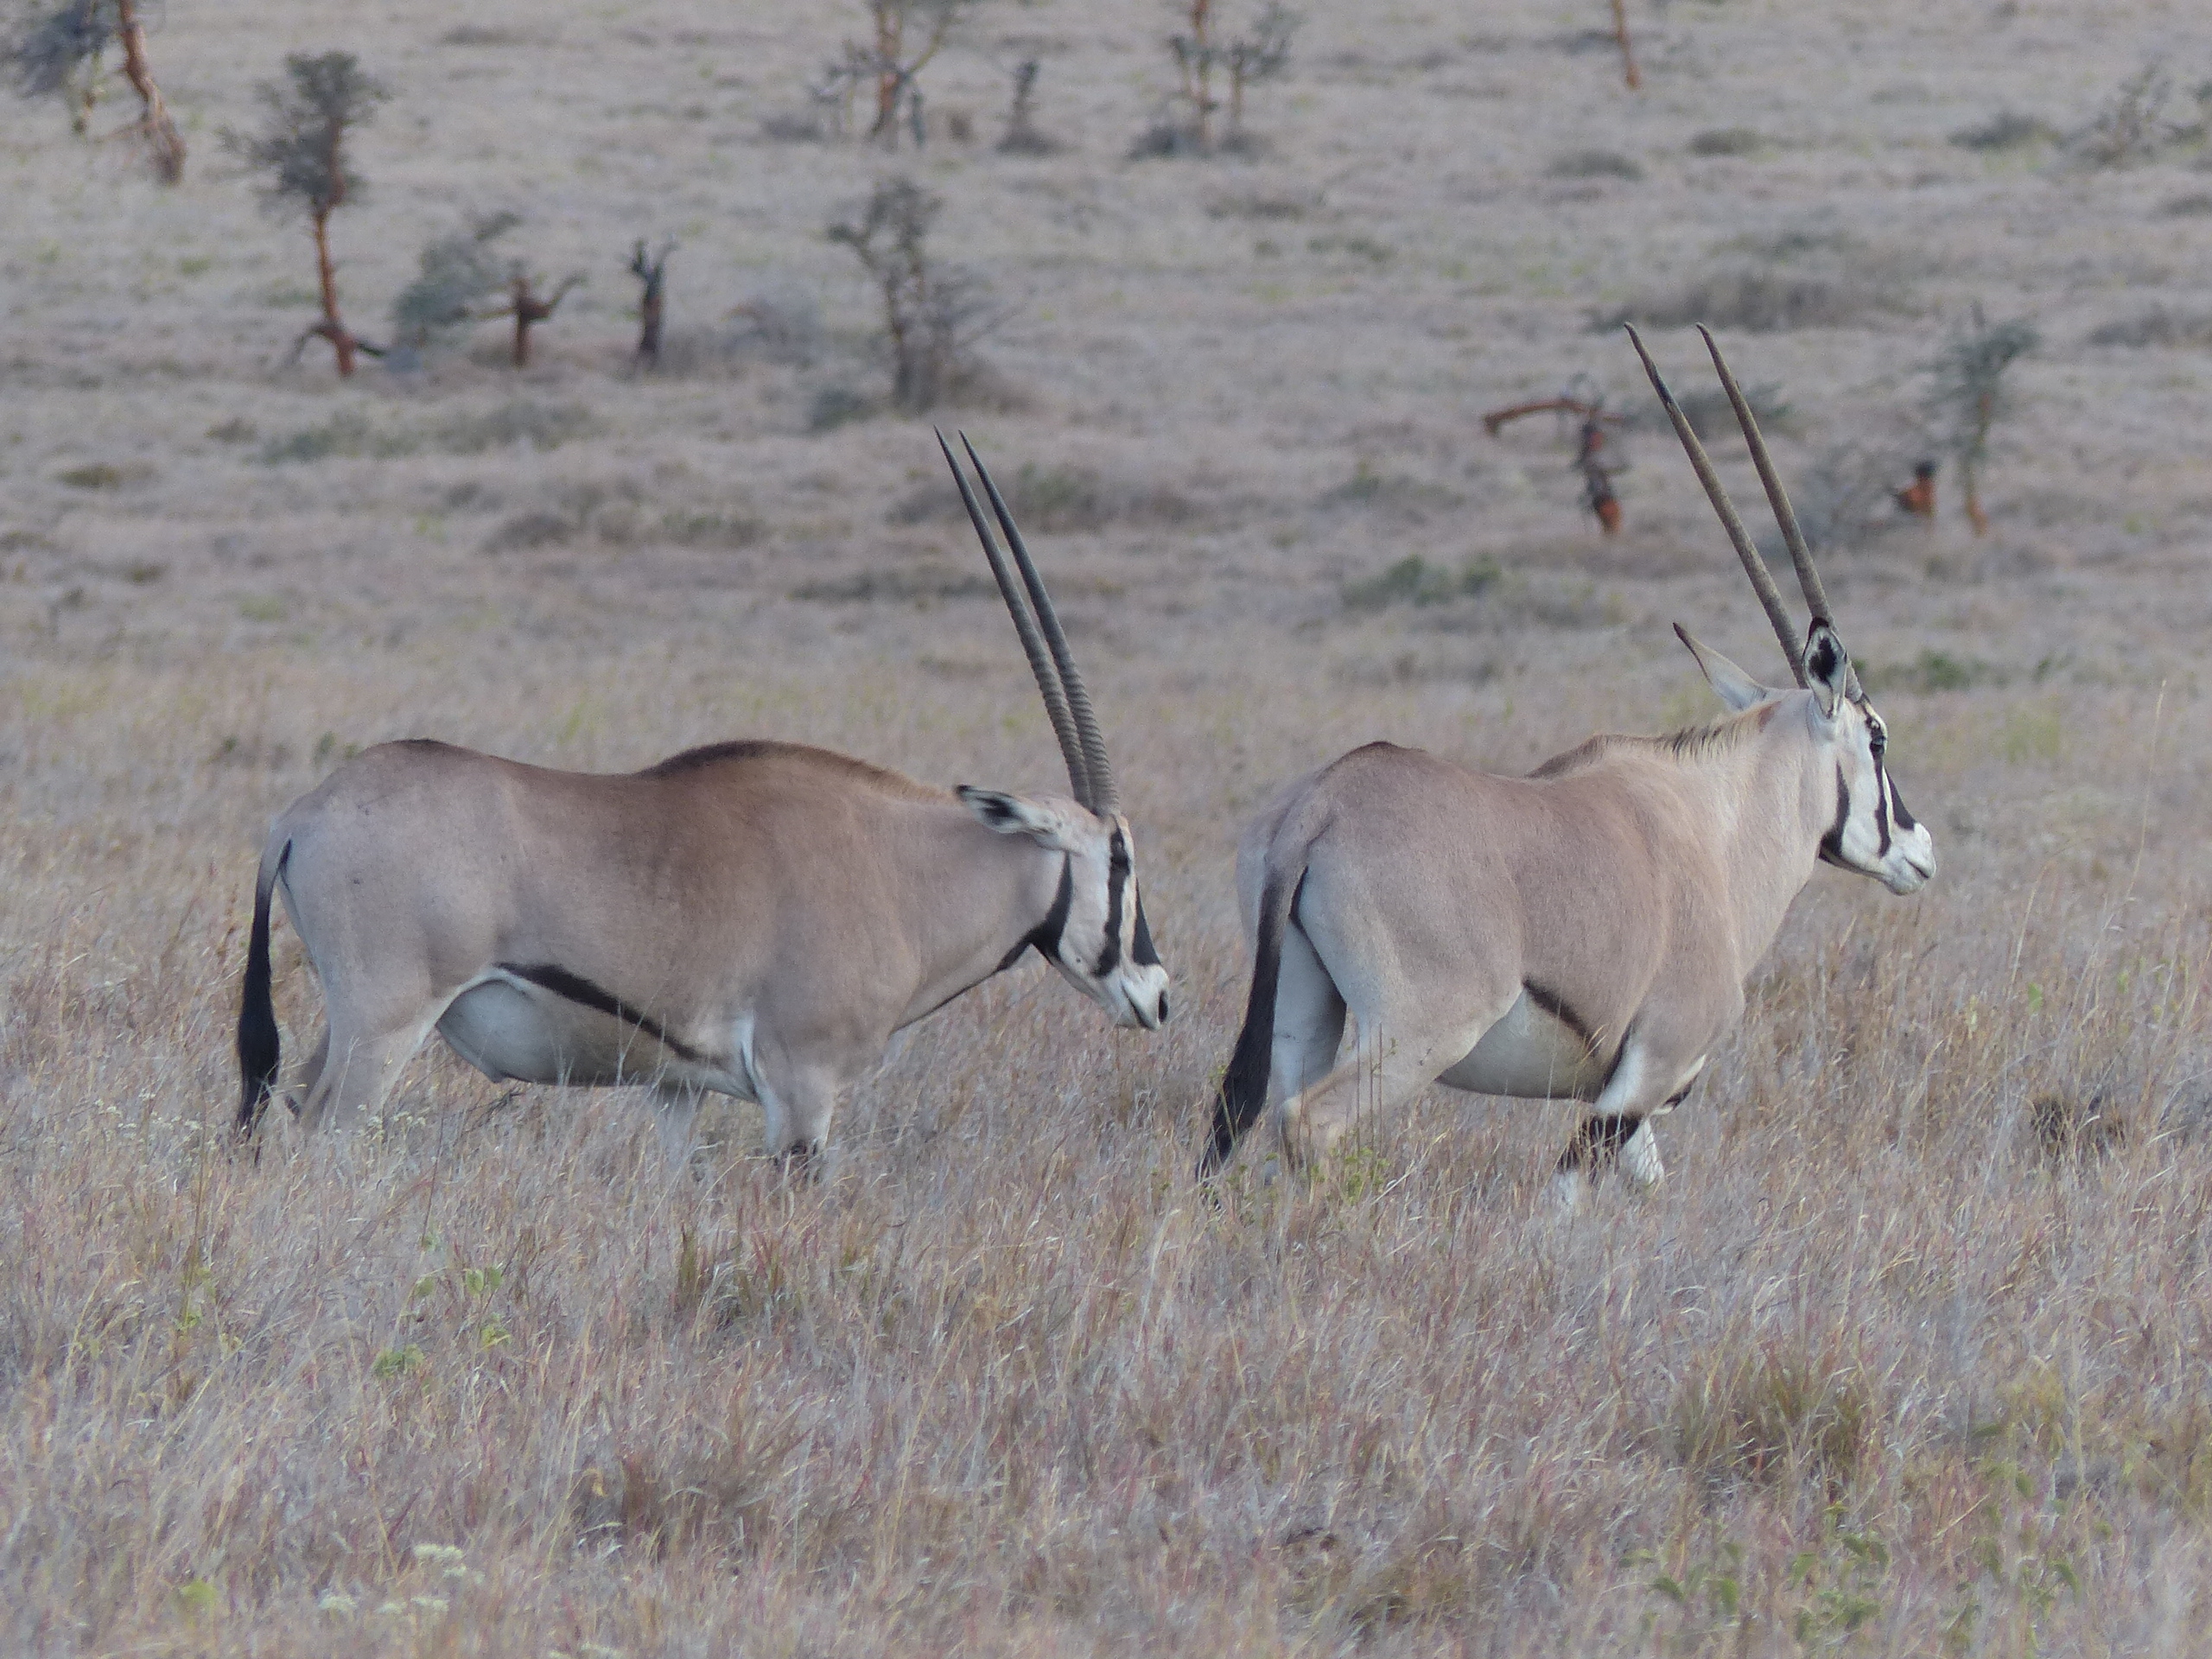 아프리카 케냐 평원을 돌아다니는 암수 오릭스의 모습. 대부분의 소는 수컷이 암컷보다 몸집이 크지만 오릭스는 수컷과 암컷의 크기가 비슷하고 둘 다 뿔을 갖고 있다.  카이아 톰백 박사 제공